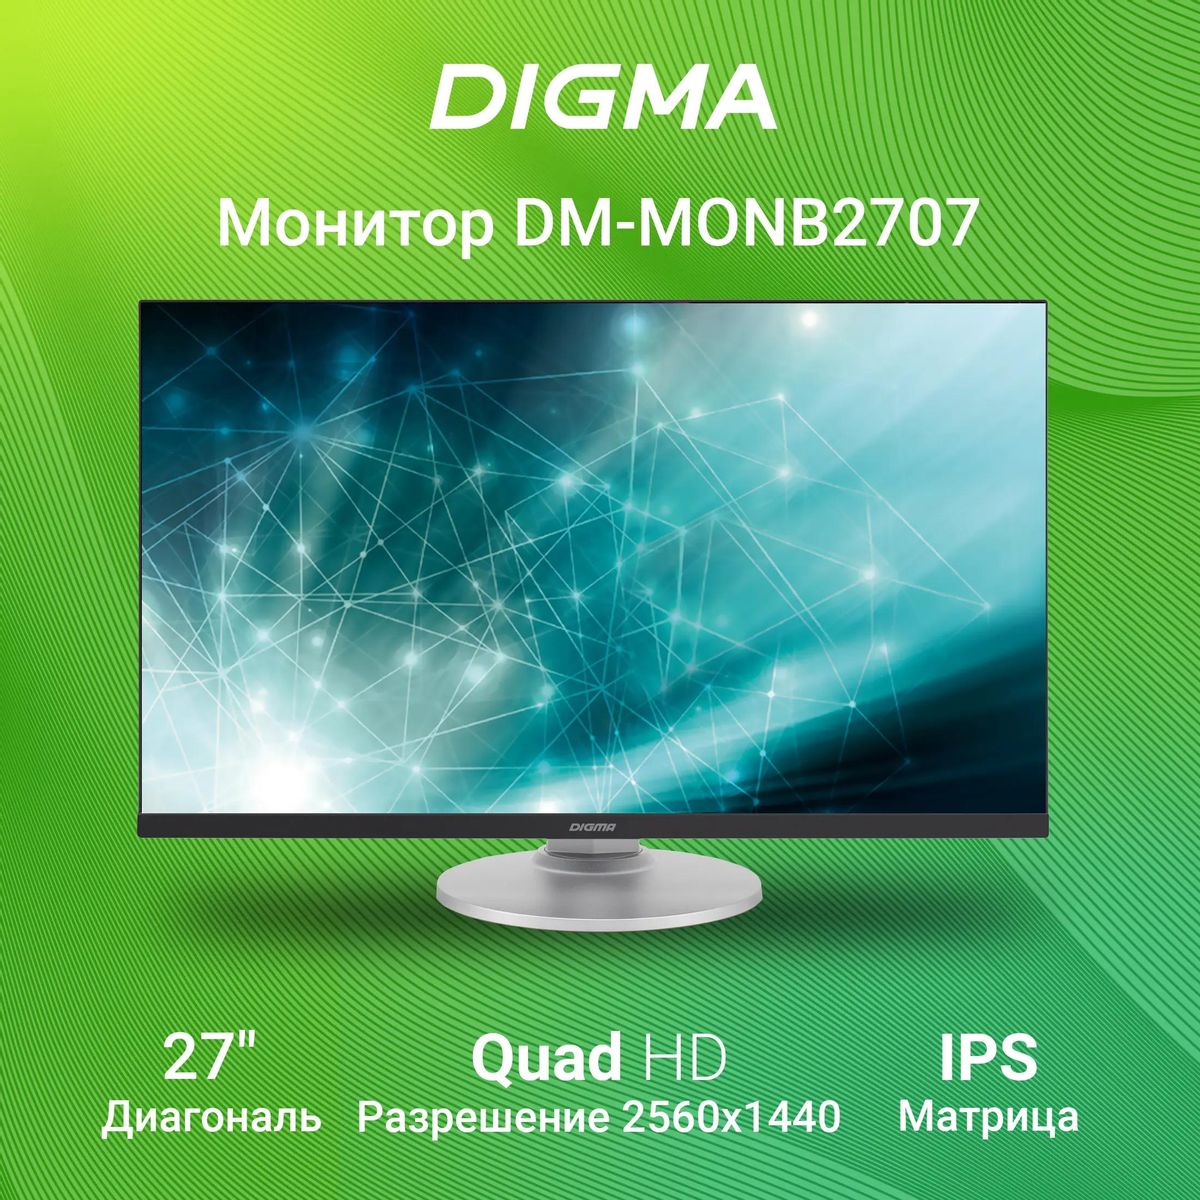 Монитор Digma DM-MONB2707 27", черный и серебристый